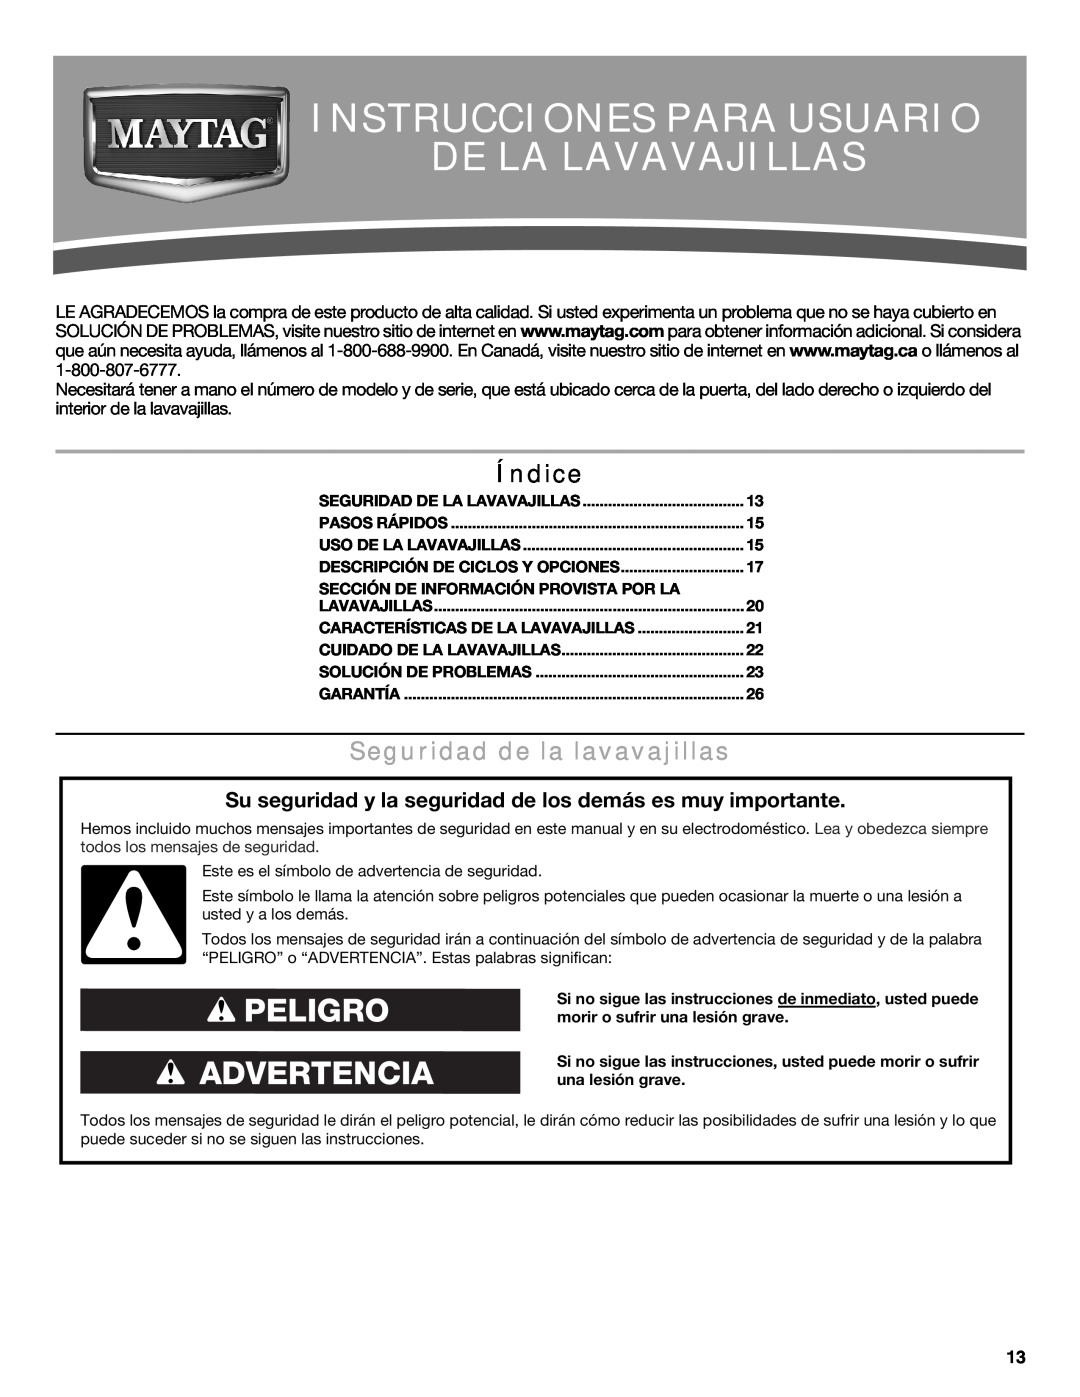 Maytag MDB6600WH Instrucciones Para Usuario De La Lavavajillas, Índice, Seguridad de la lavavajillas, Peligro Advertencia 